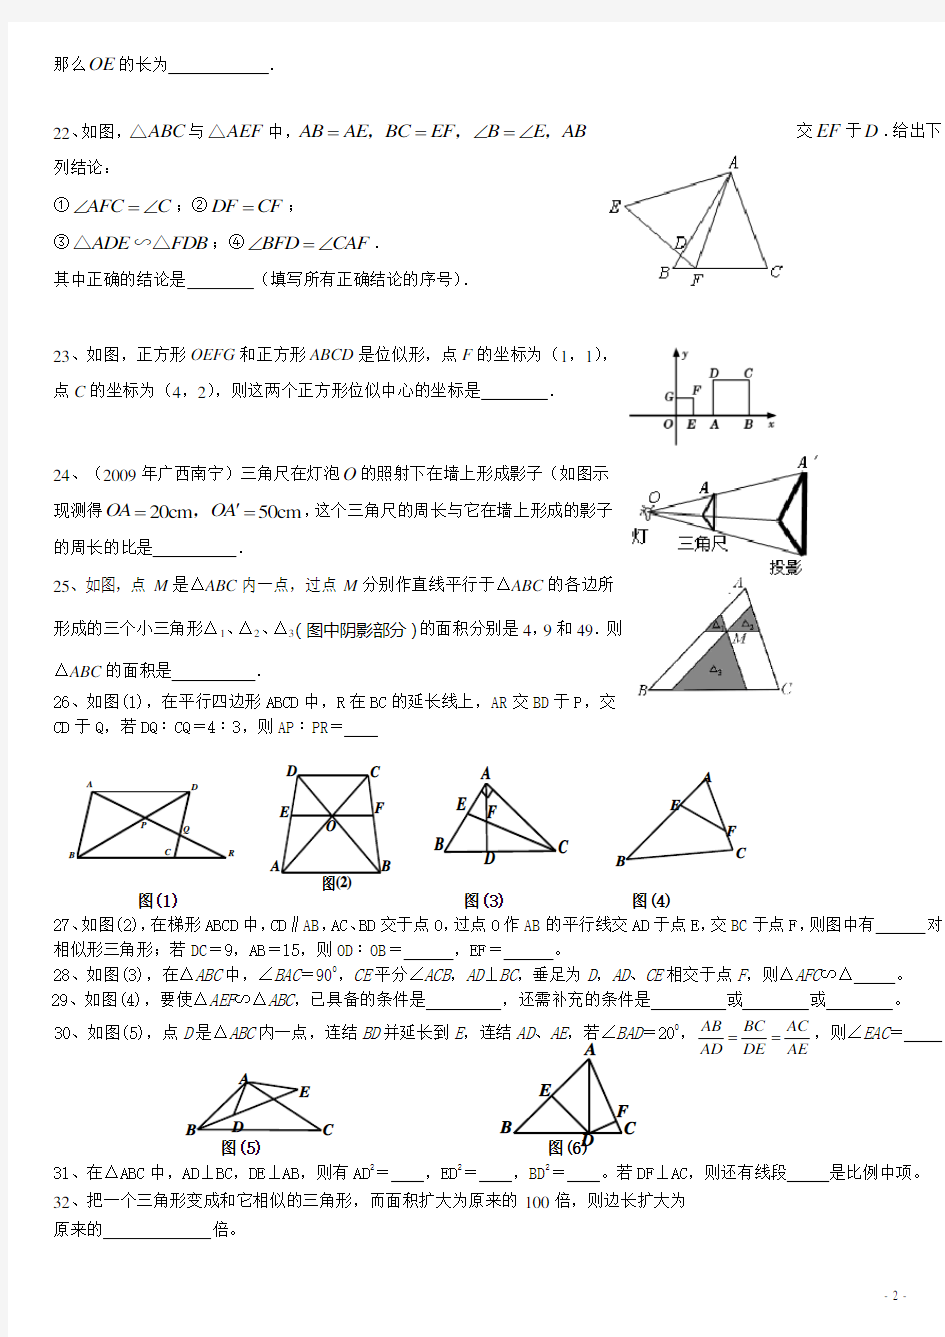 (完整)初中数学相似三角形练习题_-